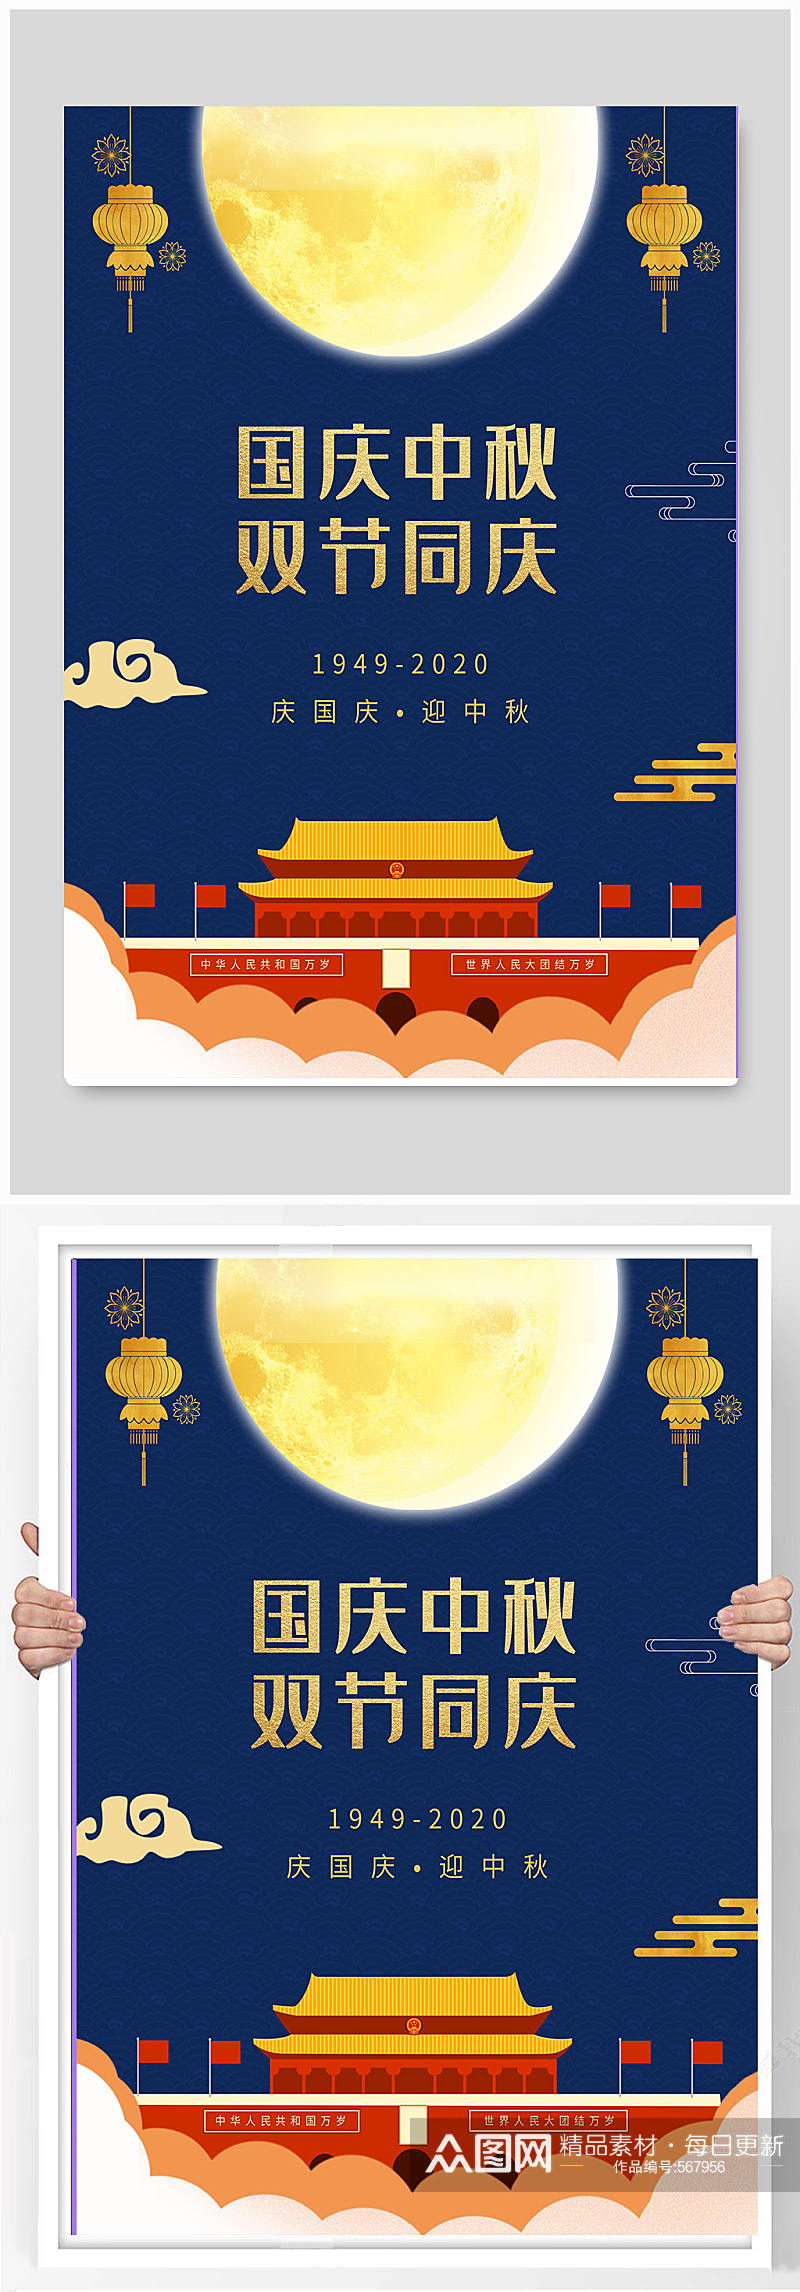 国庆节中秋节双节同庆中国风宣传海报素材